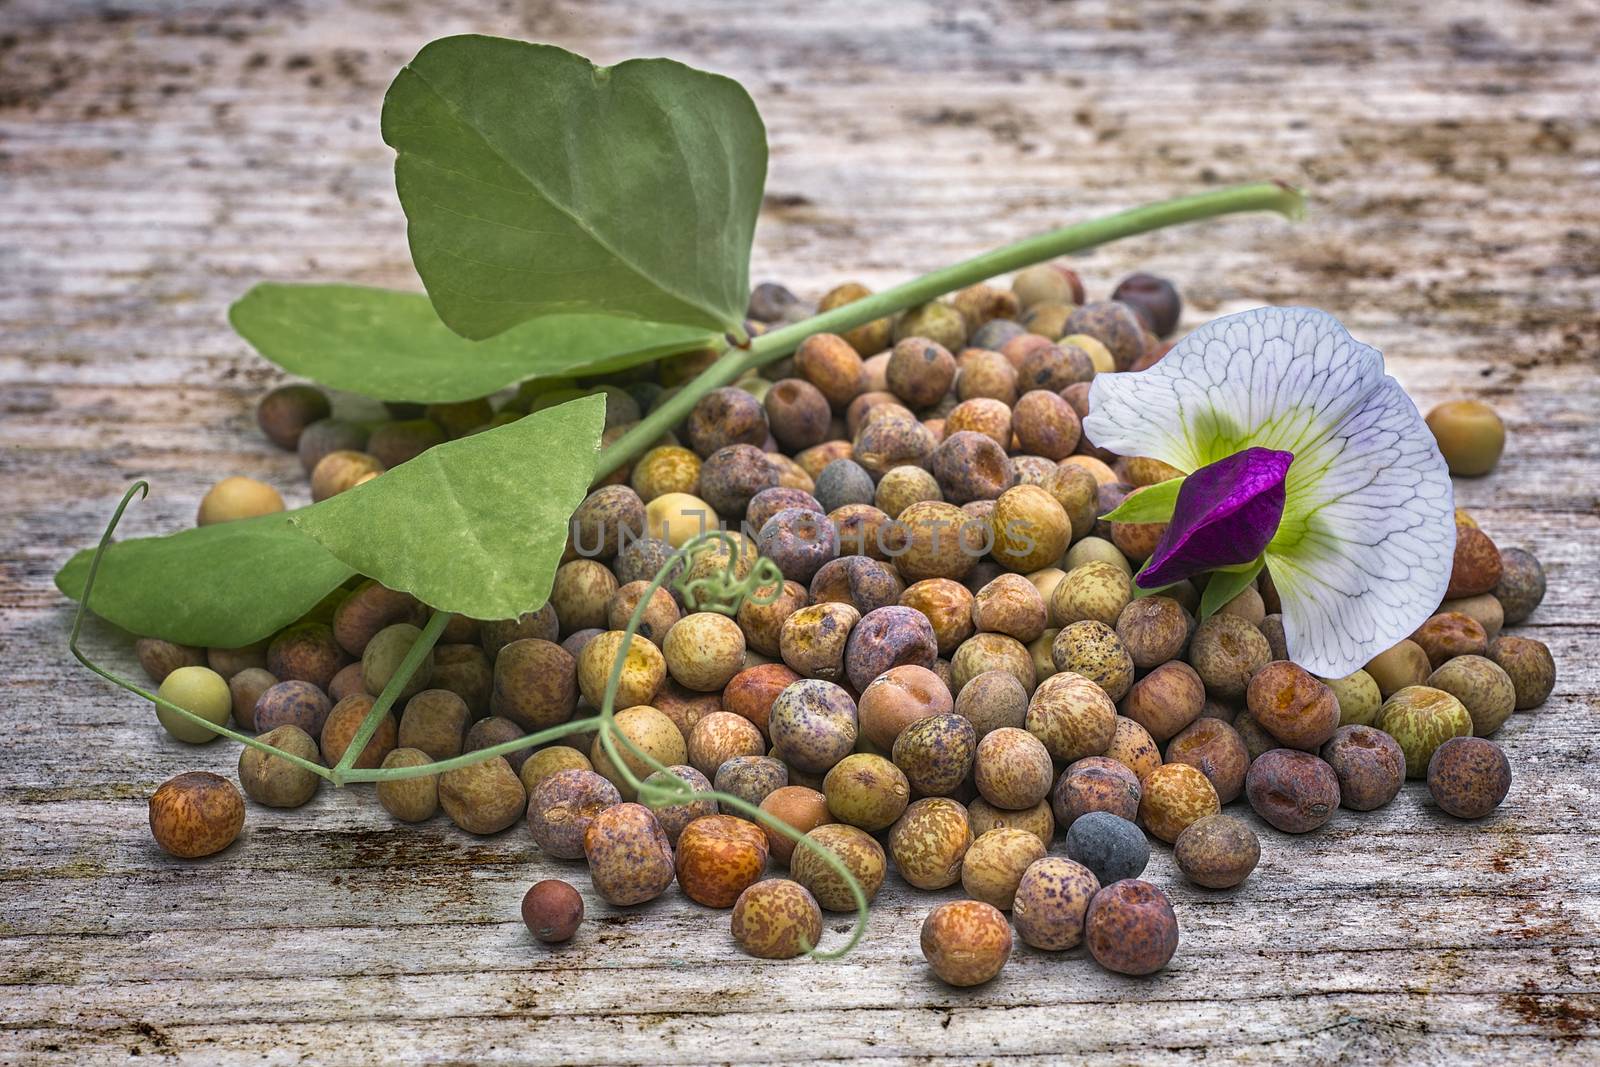 Roveja beans (Pisum sativum var. arvense), also known as robigli by vainillaychile